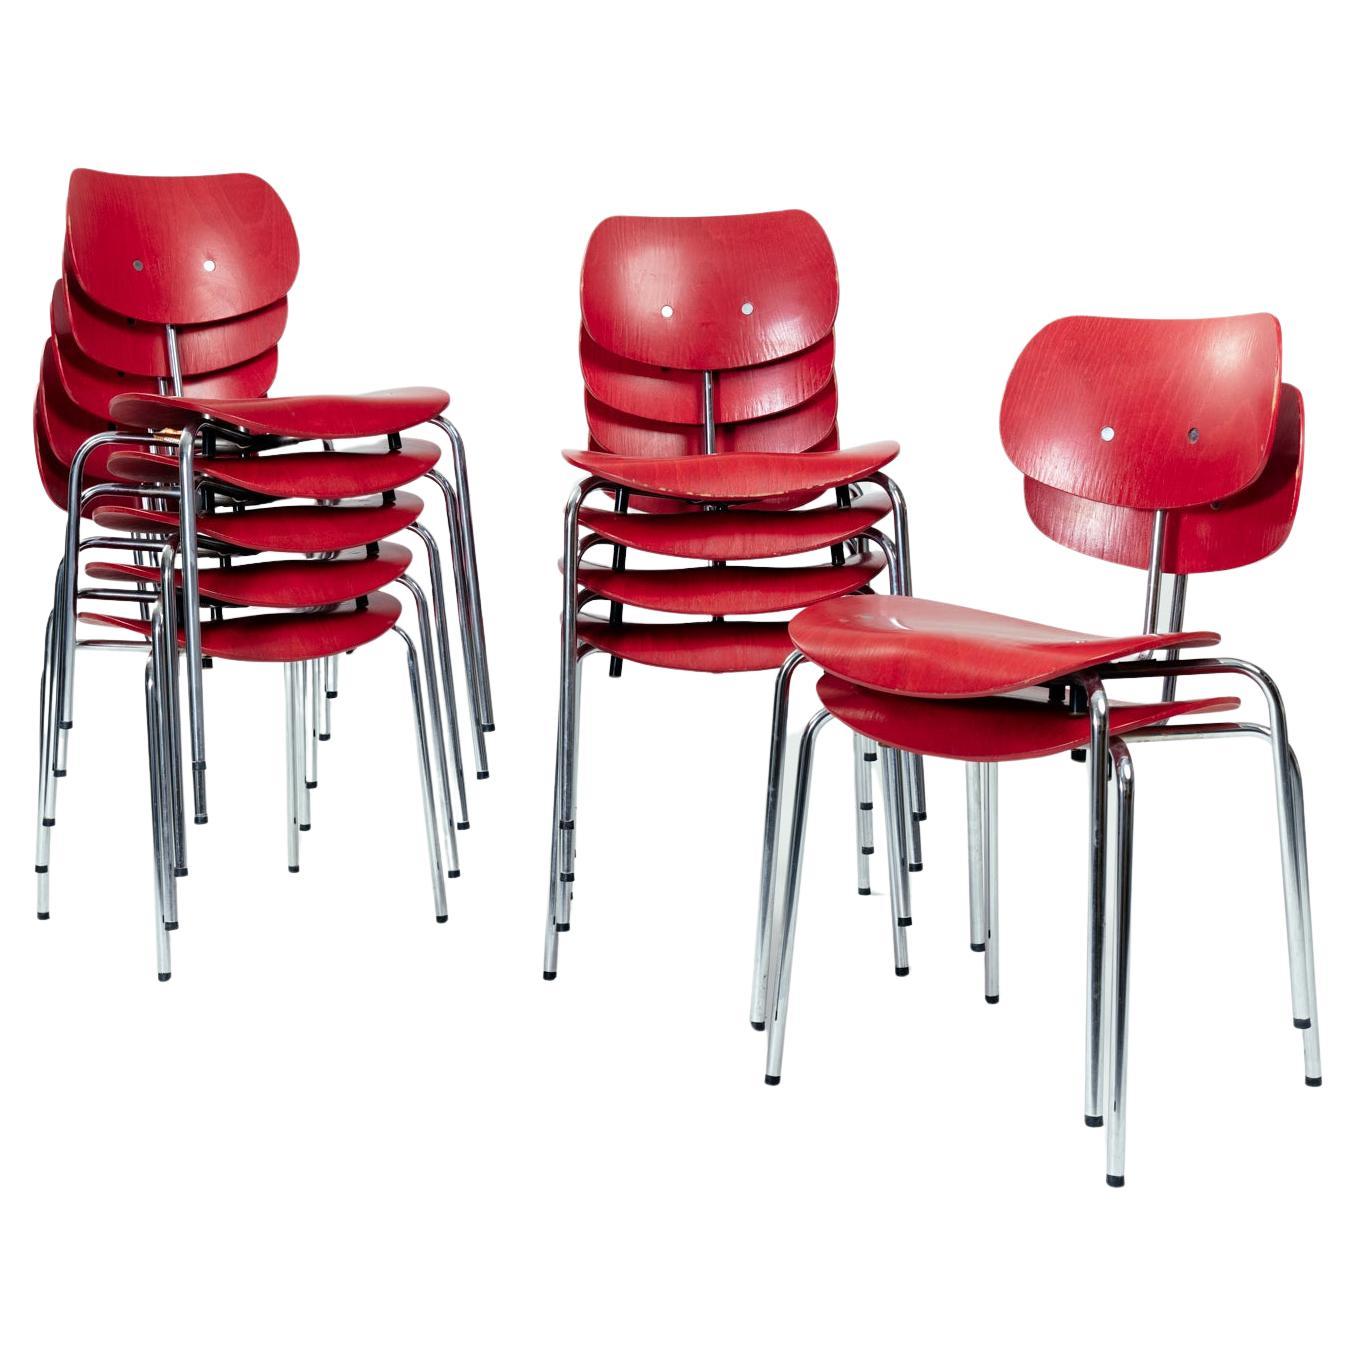 Stapelbarer Stuhl SE68 des deutschen Architekten Egon Eiermann für Wilde & Spieth in Rot.
Entworfen im Jahr 1952.

Ergonomisch & organisch geformter Sitz und Rückenlehne aus Buchensperrholz, Gestell aus verchromtem Stahlrohr;
Der Sitz ist 44 cm